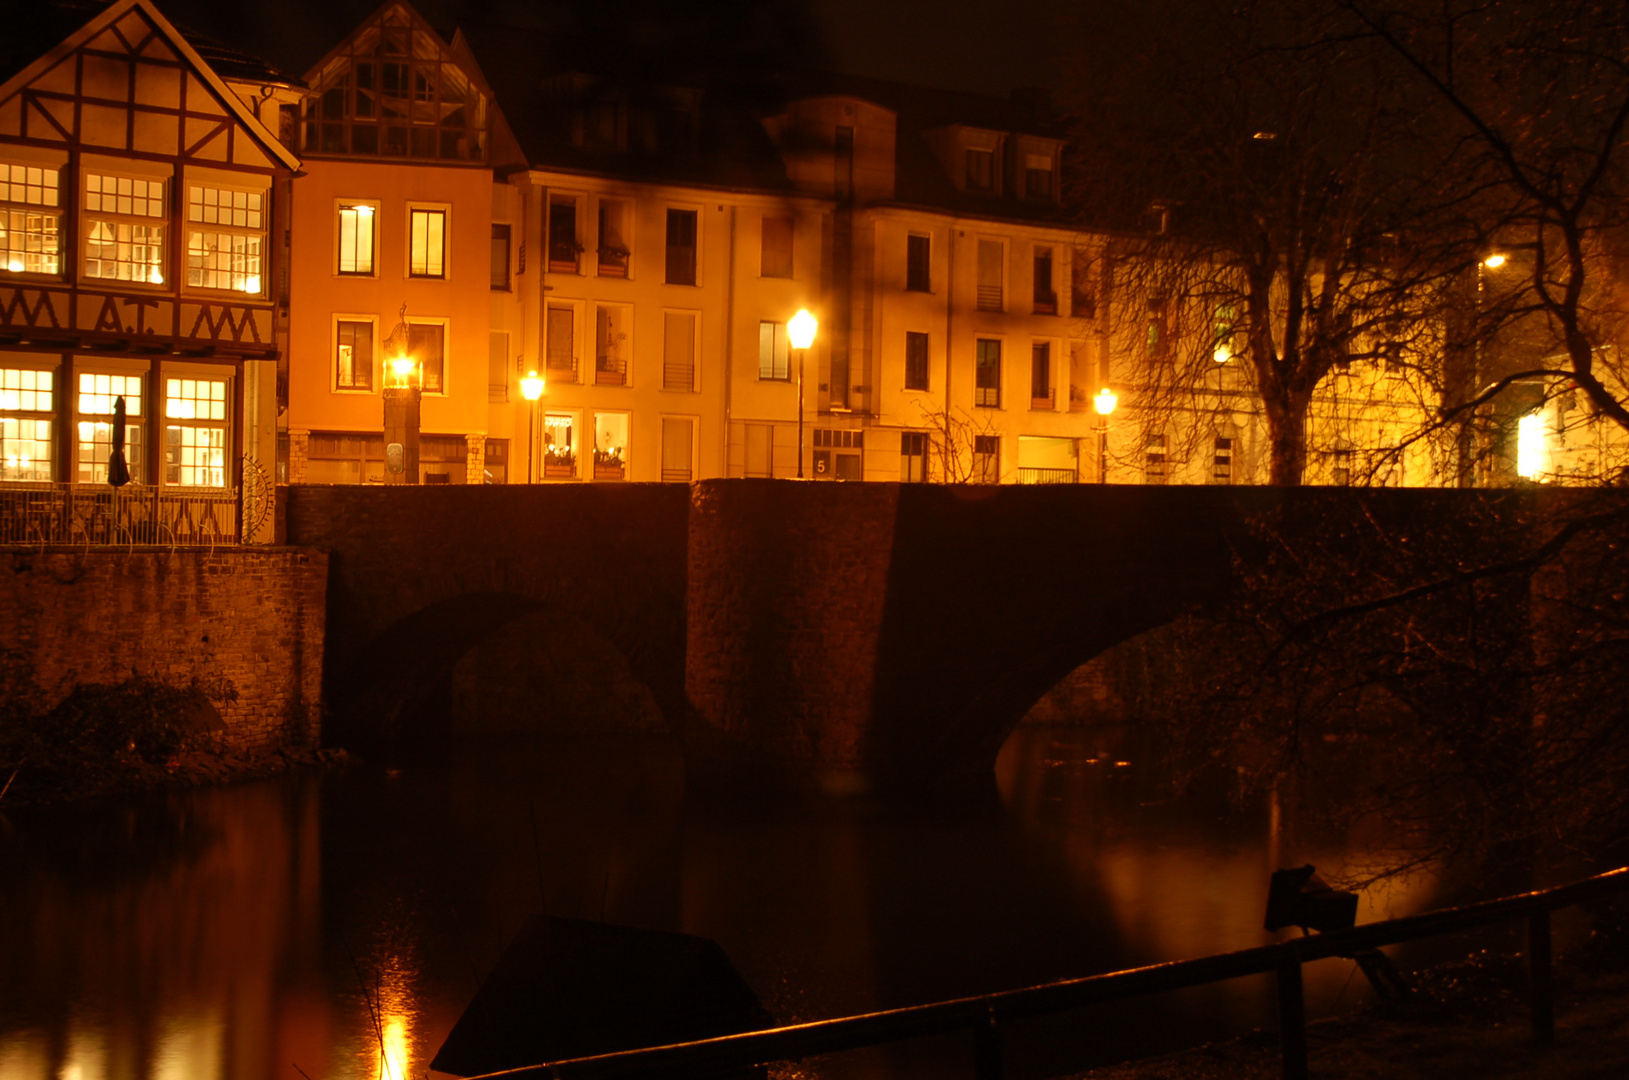 Essen-Kettwig Altstadtbrücke